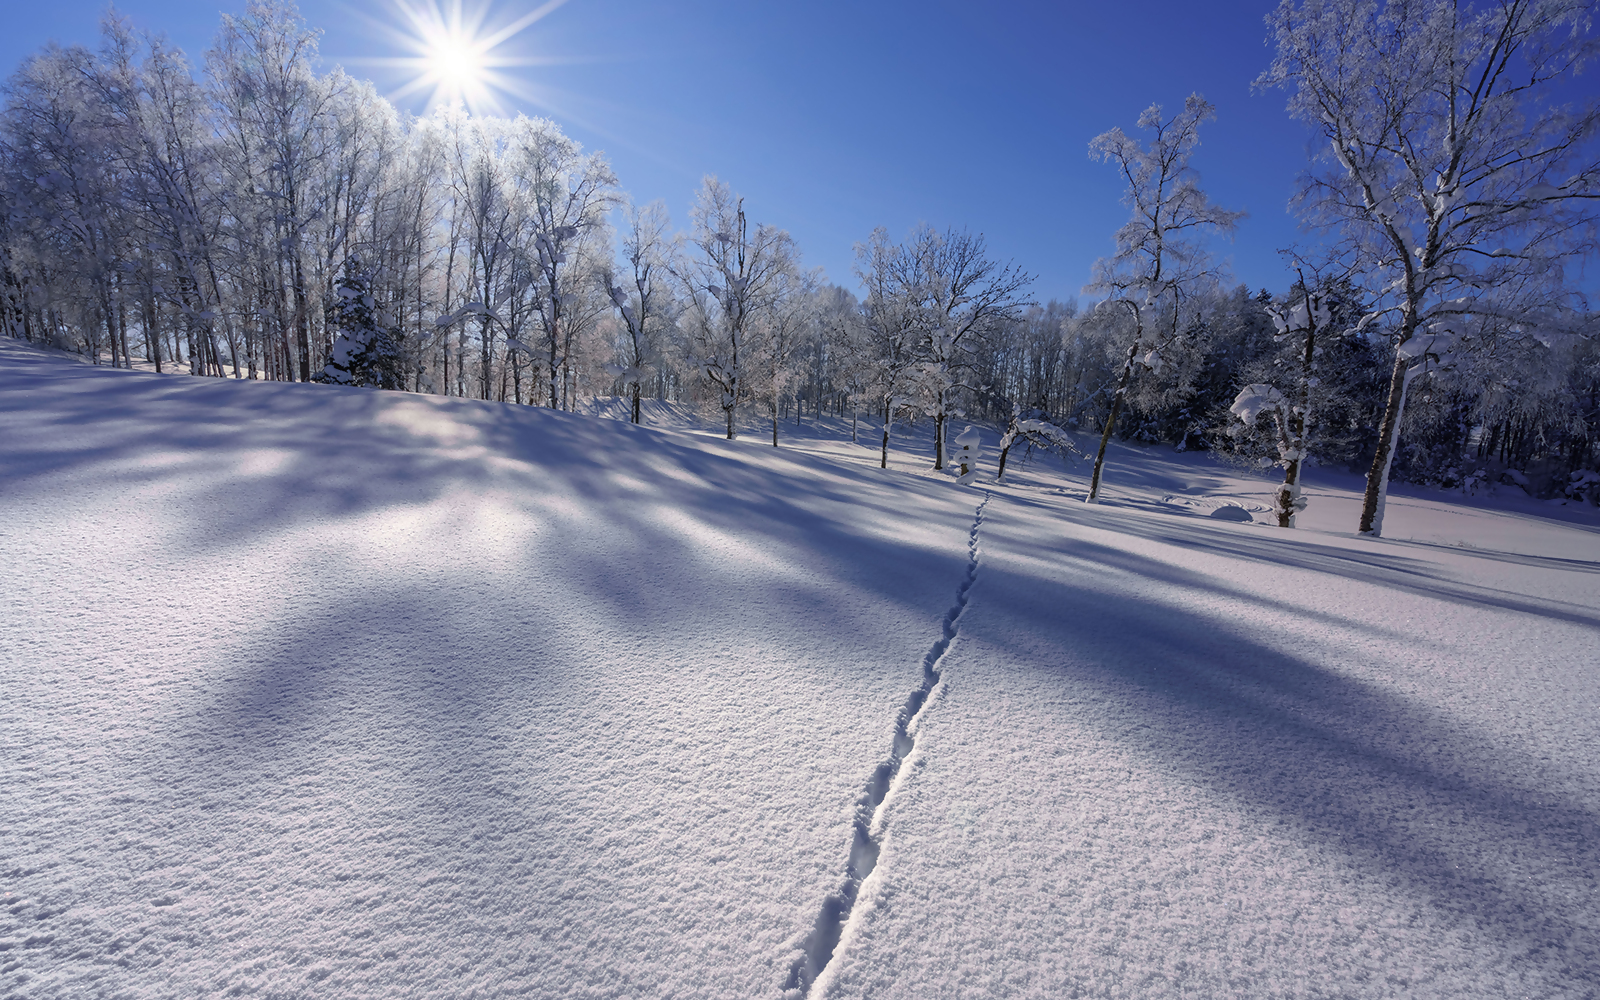 動物の足跡がついた雪原に太陽光が降り注いでいる写真